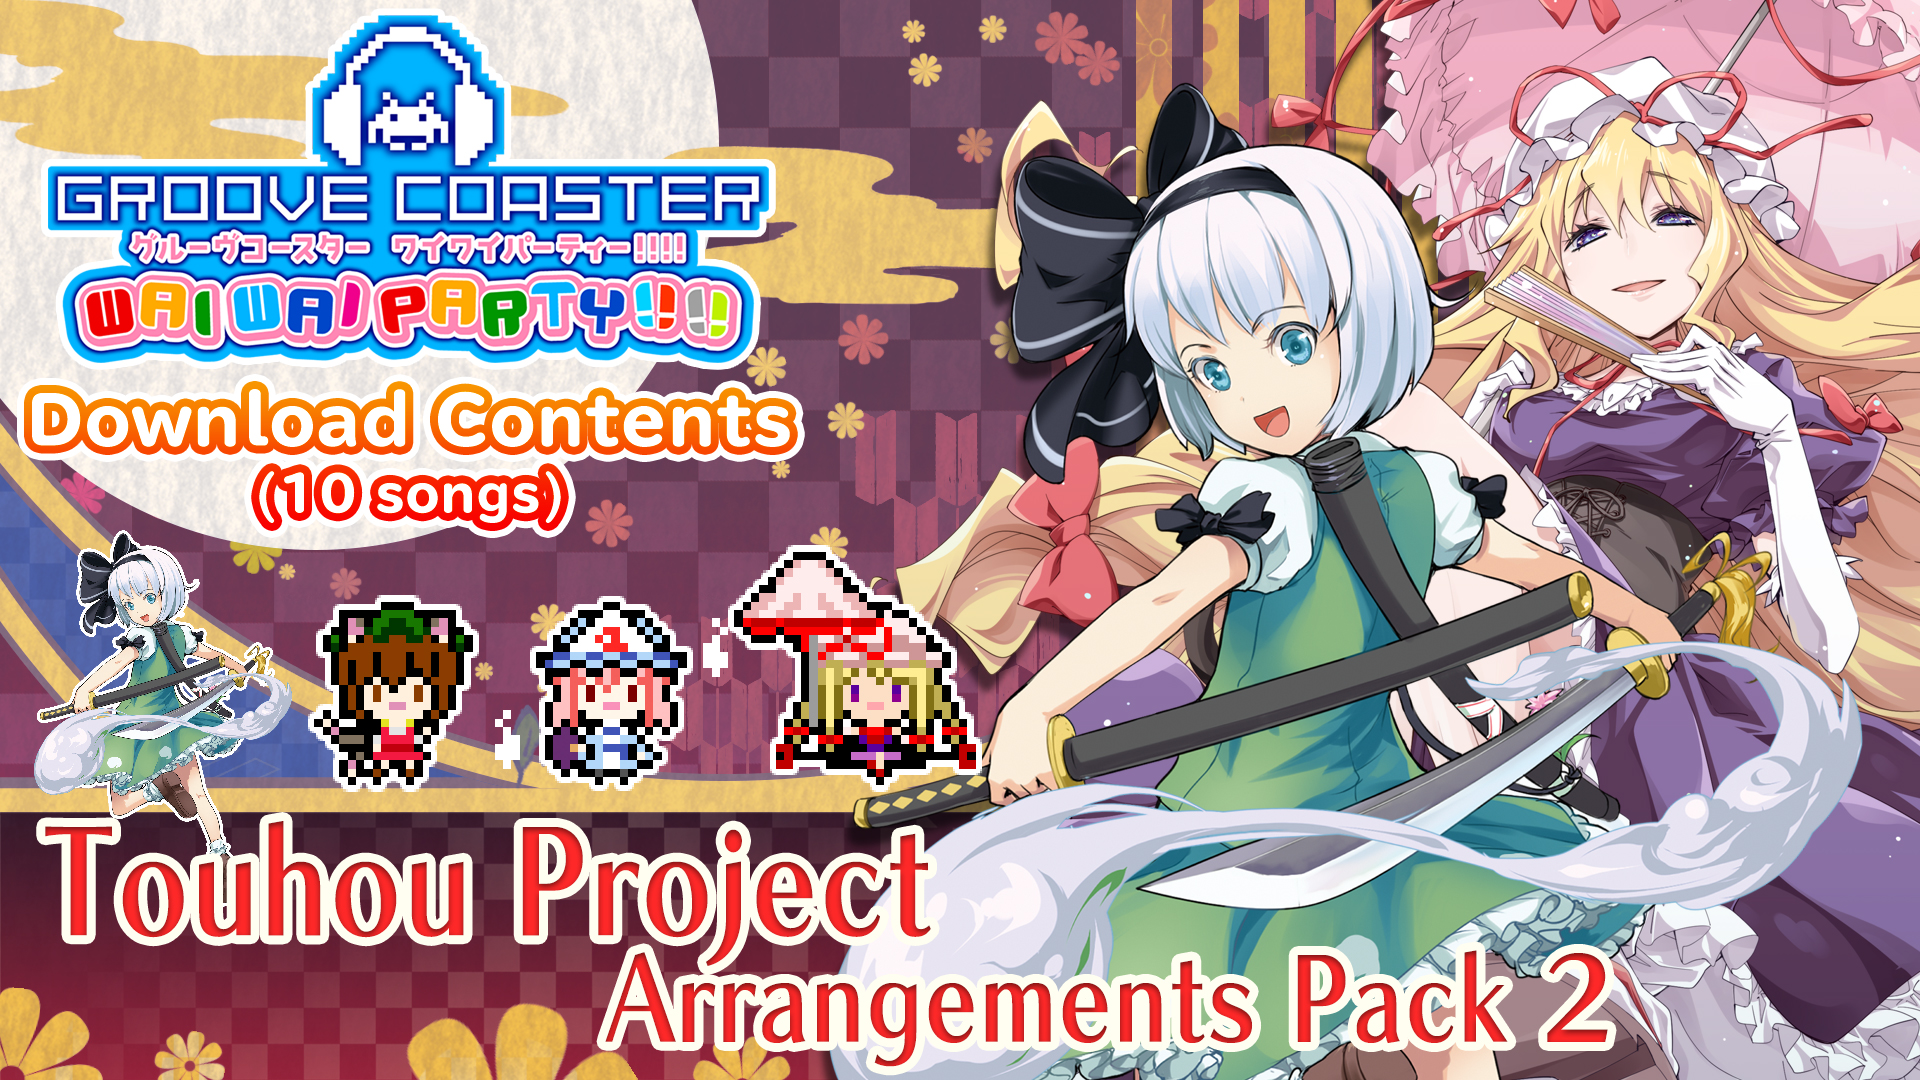 Touhou Project Arrangements Pack 2